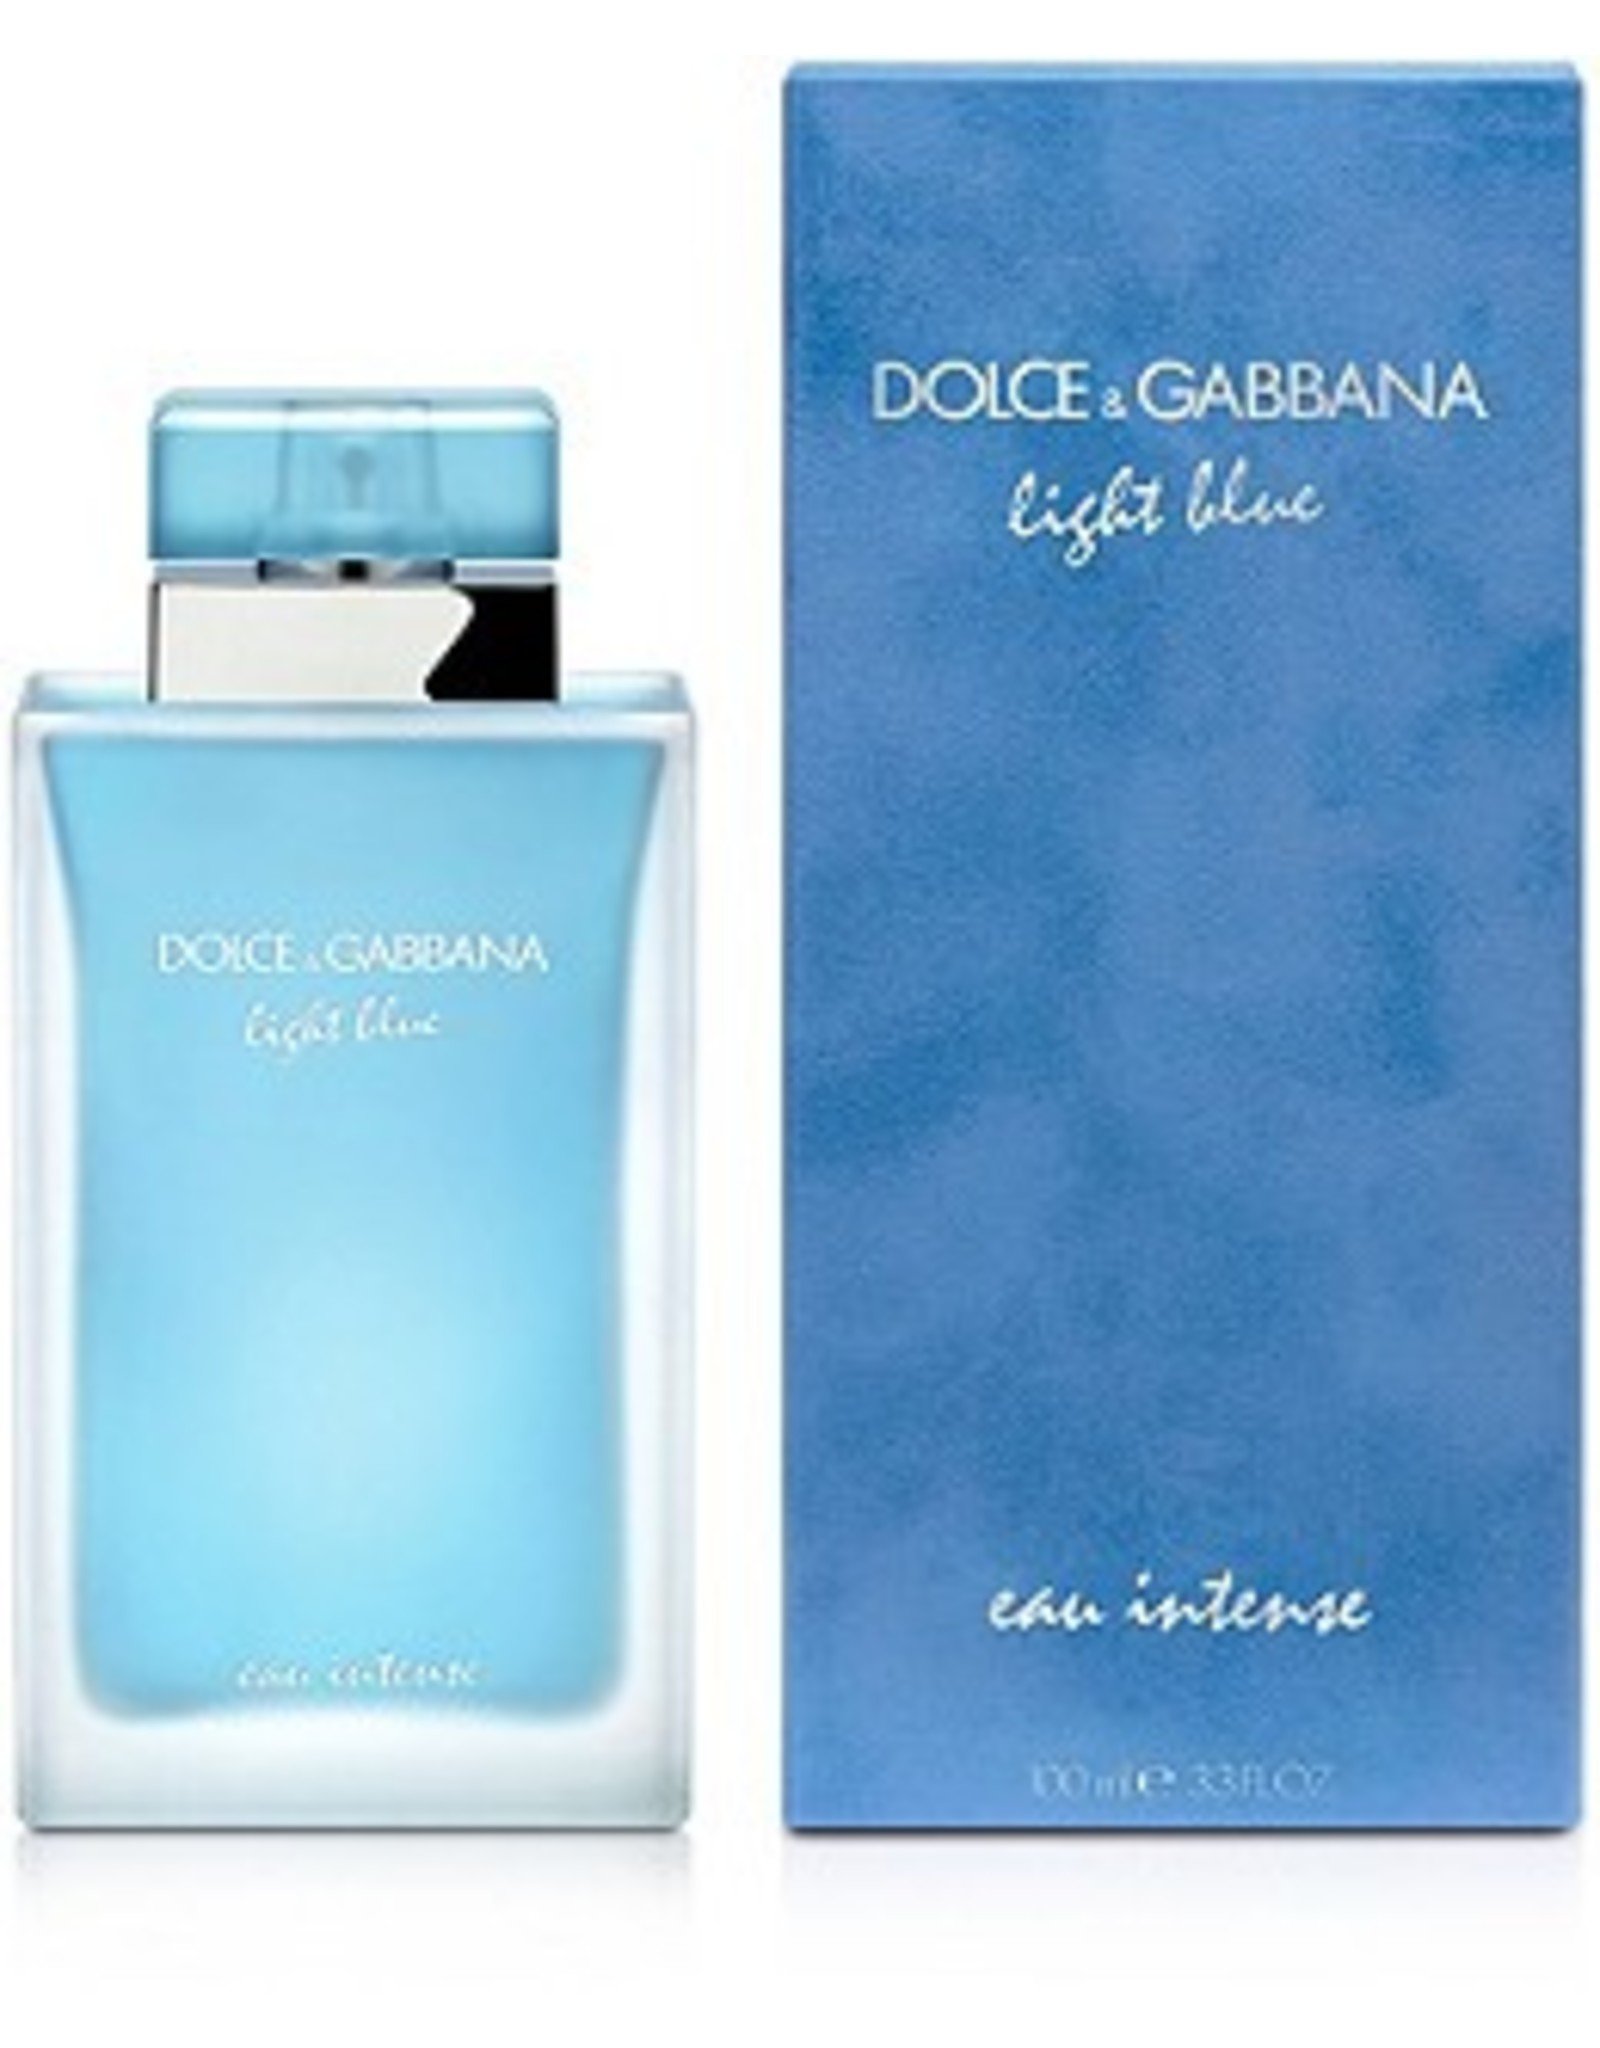 DOLCE & GABBANA DOLCE & GABBANA LIGHT BLUE EAU INTENSE